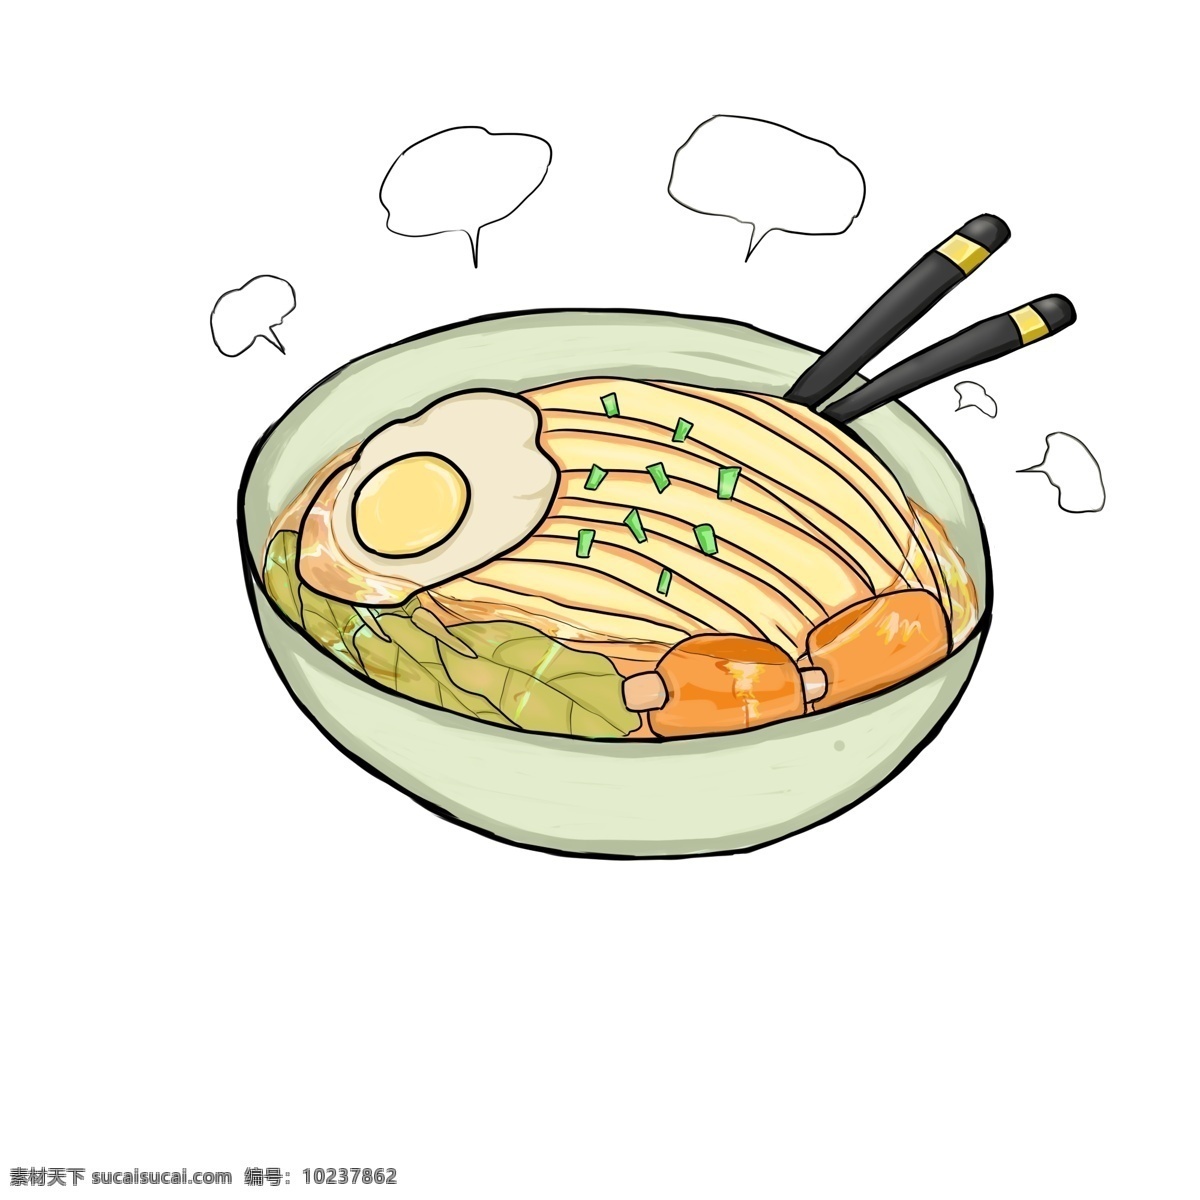 卡通 手绘 热腾腾 拉面 插画 面条 面粉 主食 粮食 食物 荷包蛋 青菜 葱末 肉片 汤汁 美味 可口 卡通手绘